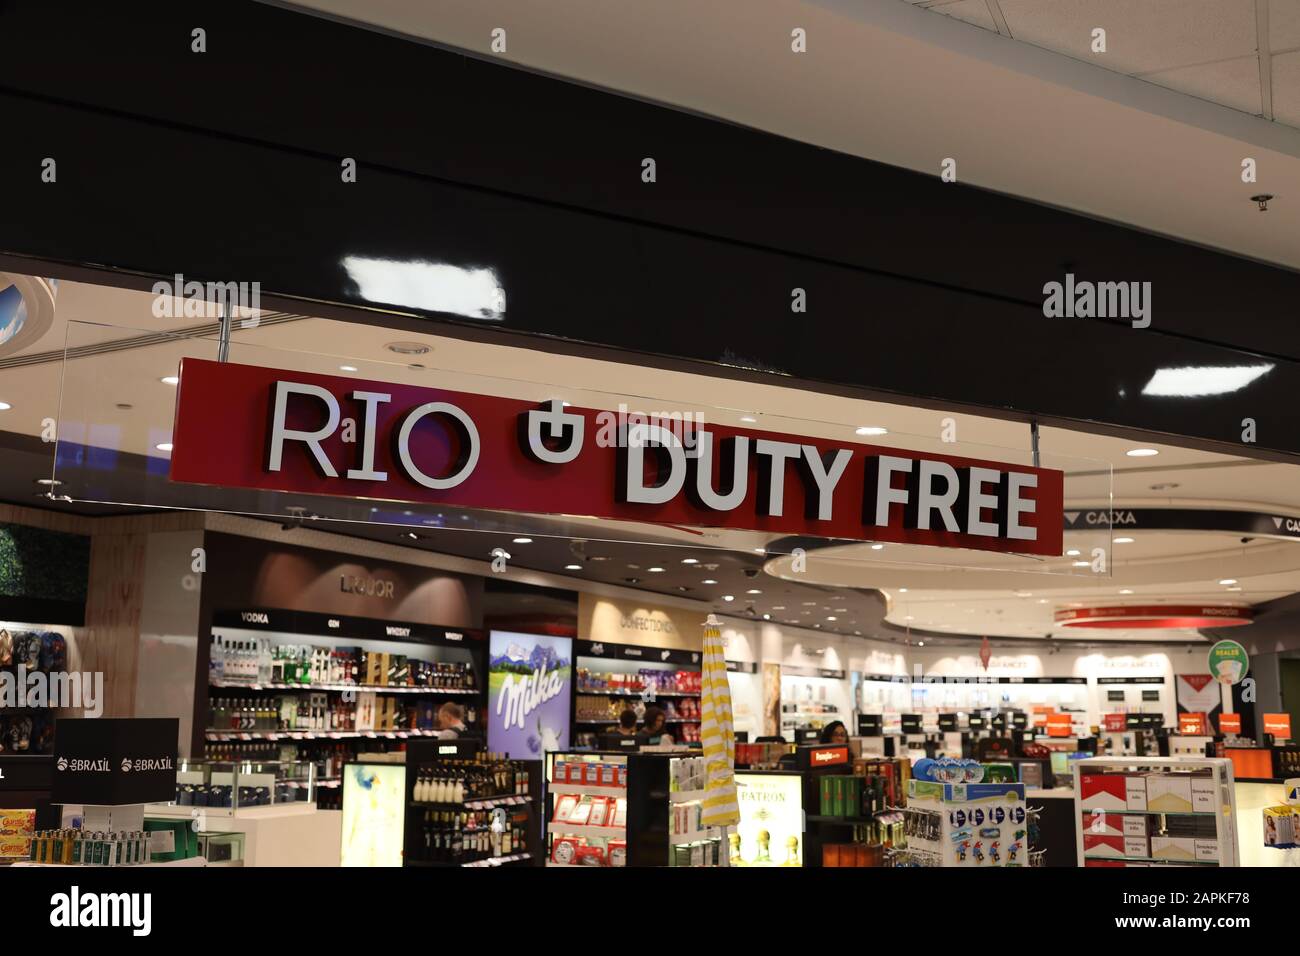 Rio de Janeiro, Brazil - December 30, 2019: Rio de Janeiro Duty free sign in the Galeao International airport in Rio De Janeiro, Brazil Stock Photo